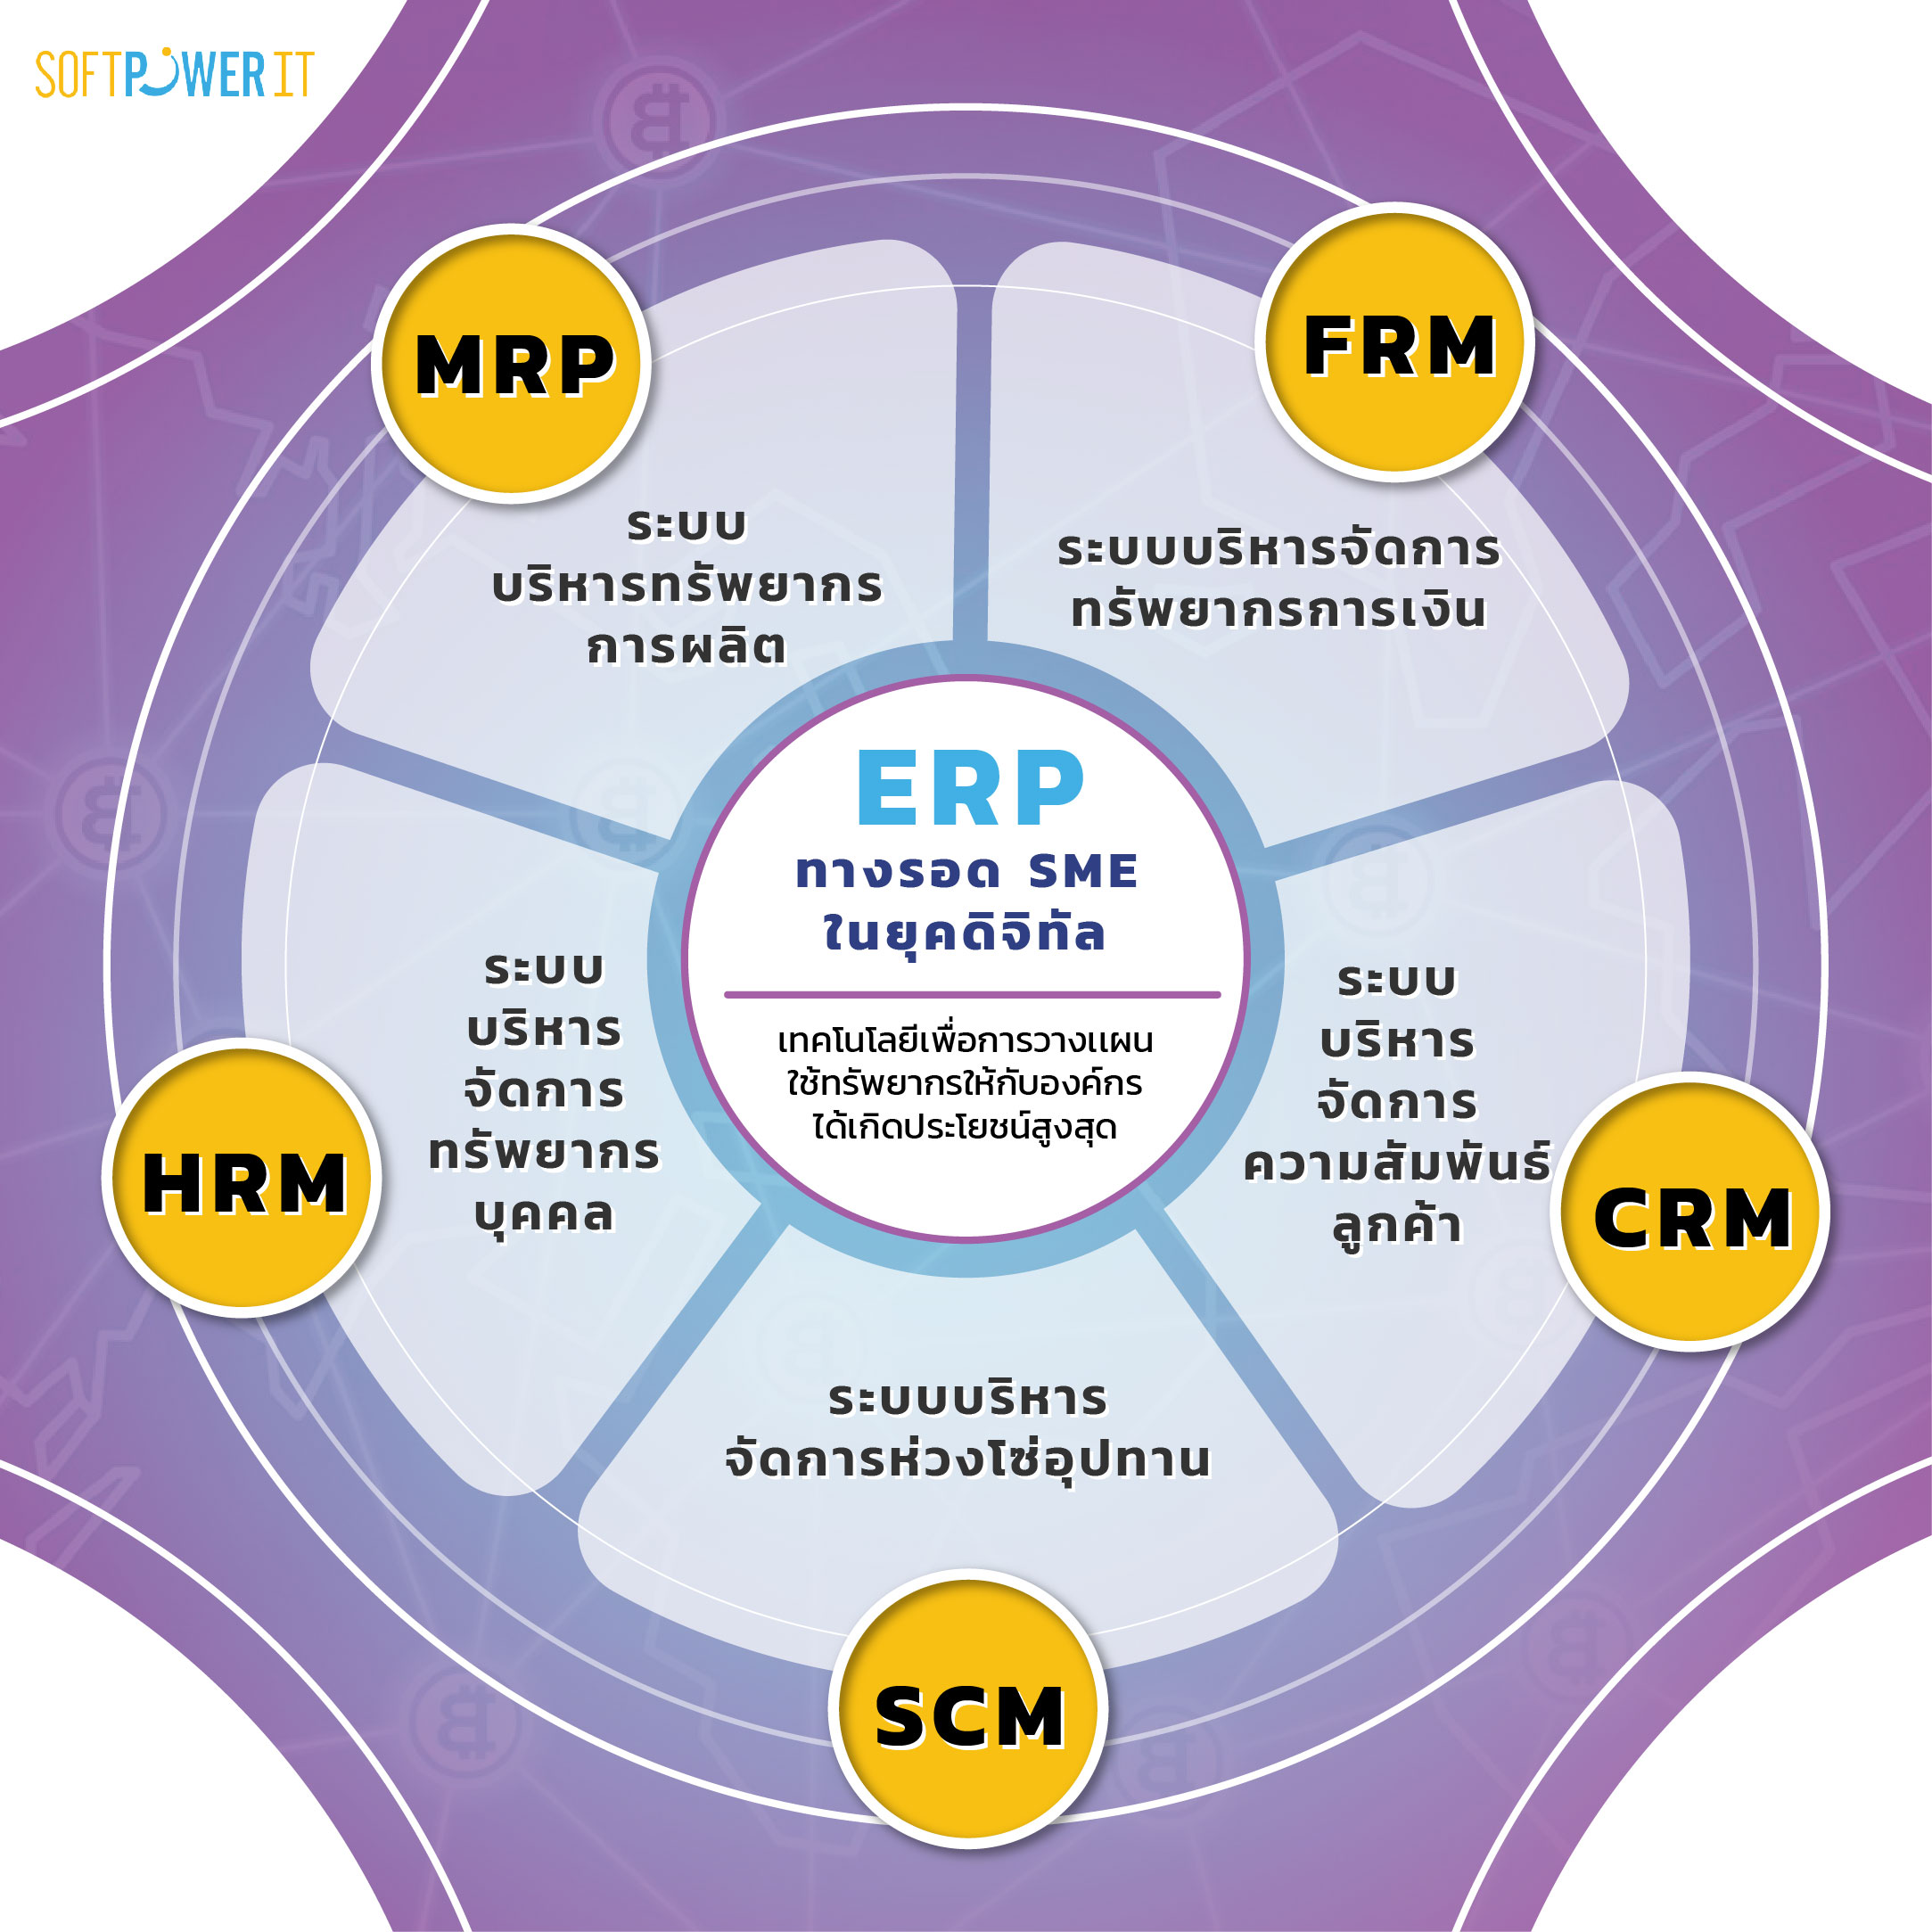 ทำความรู้จัก ERP ทางรอดของ SME ในยุคดิจิทัล